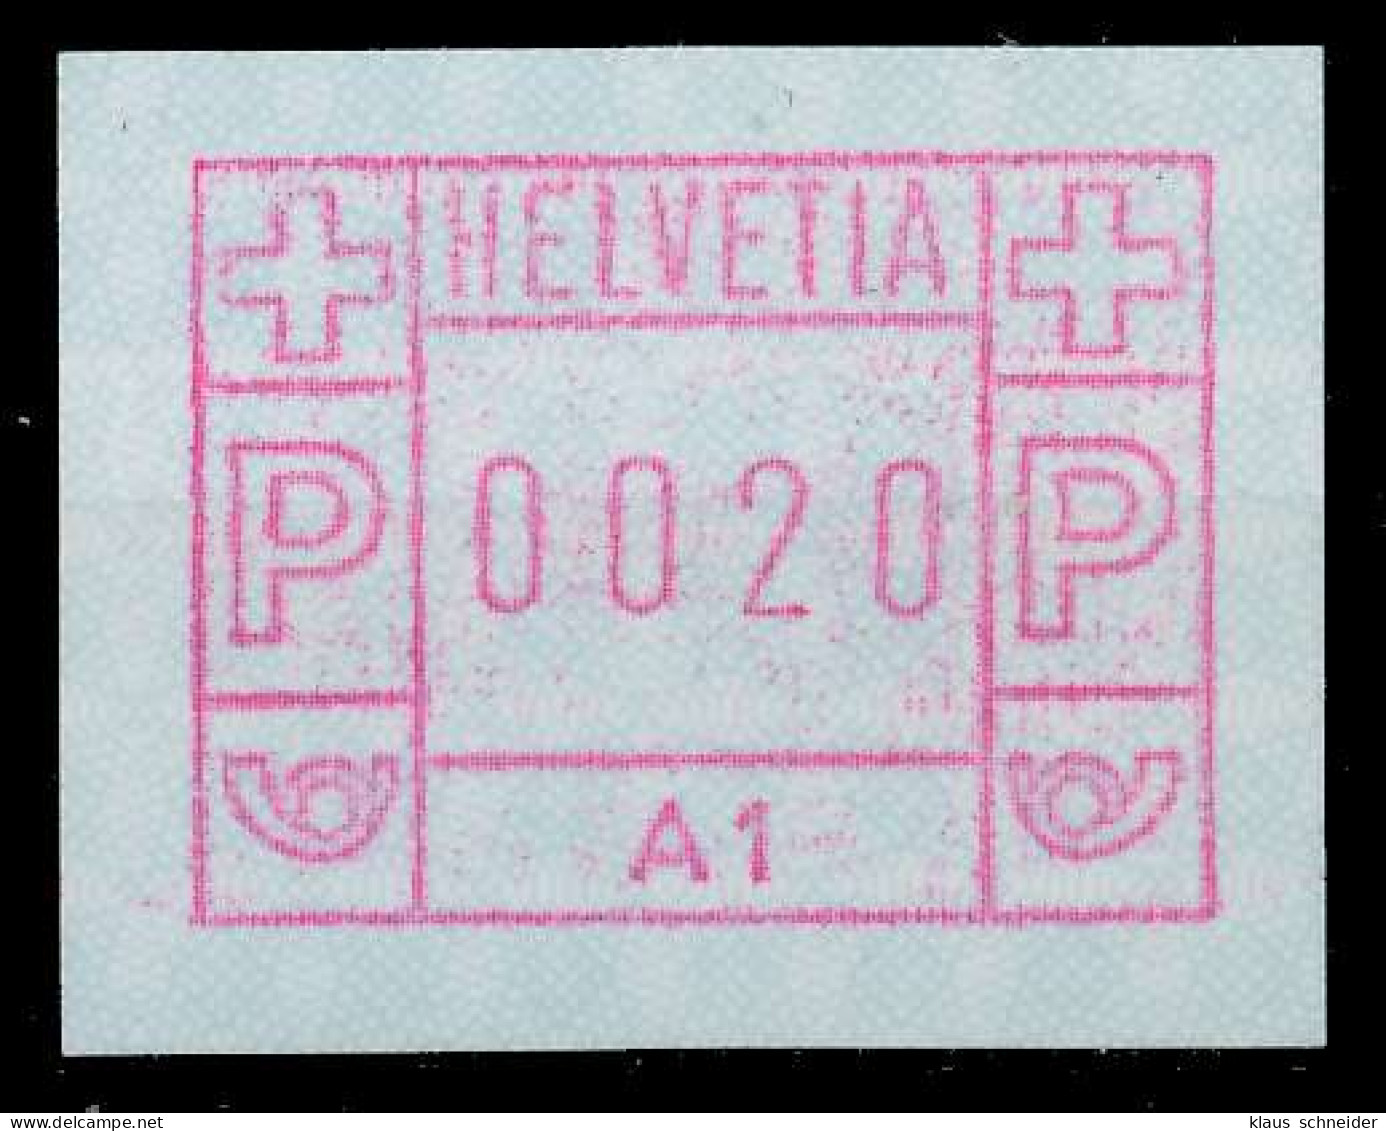 SCHWEIZ AUTOMATENMARKEN A1 Nr 1A1 Postfrisch X679416 - Automatic Stamps